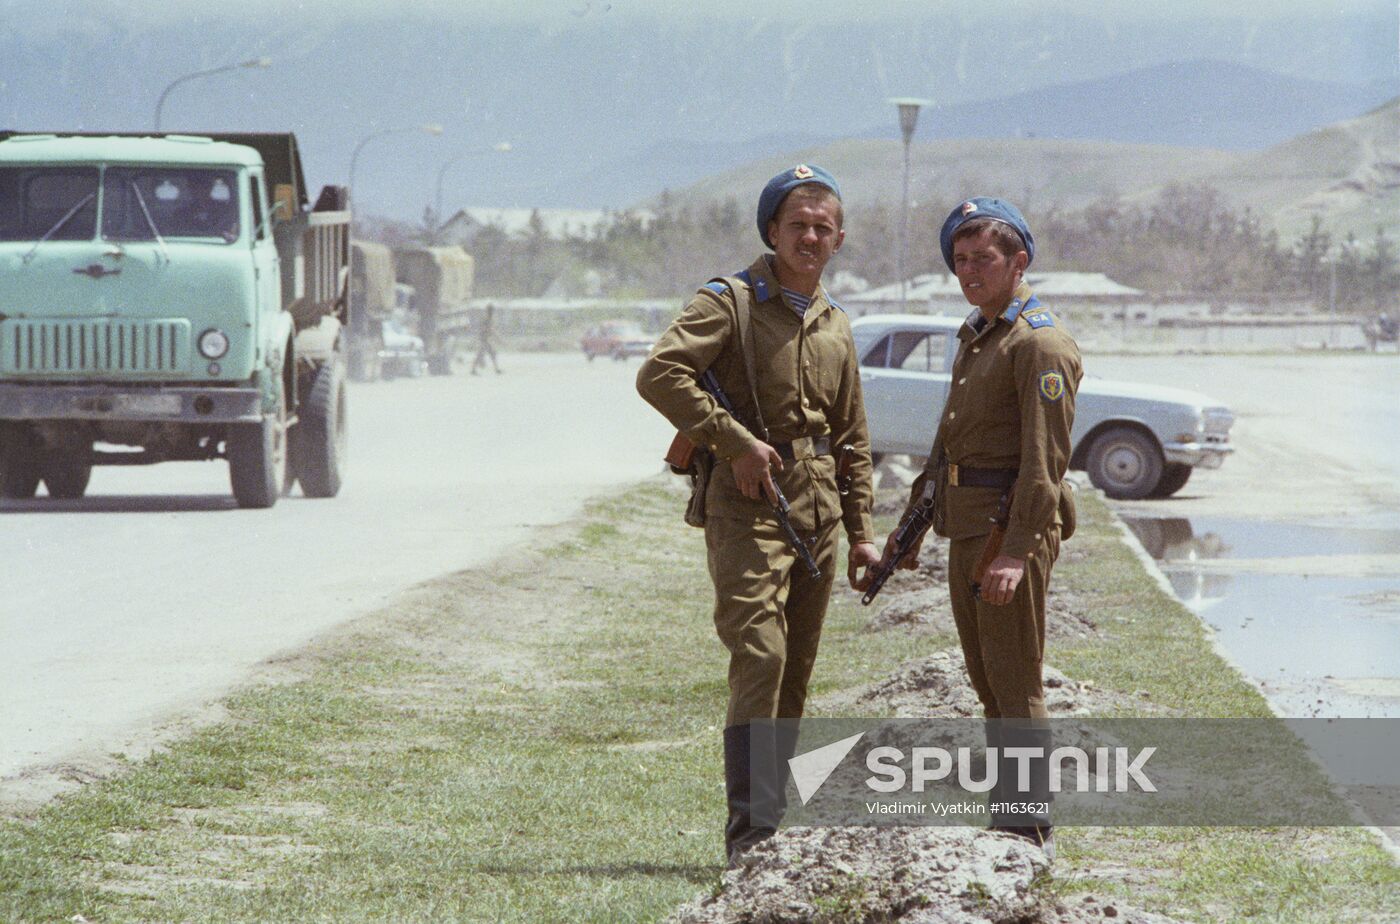 Soviet soldiers in Afghanistan